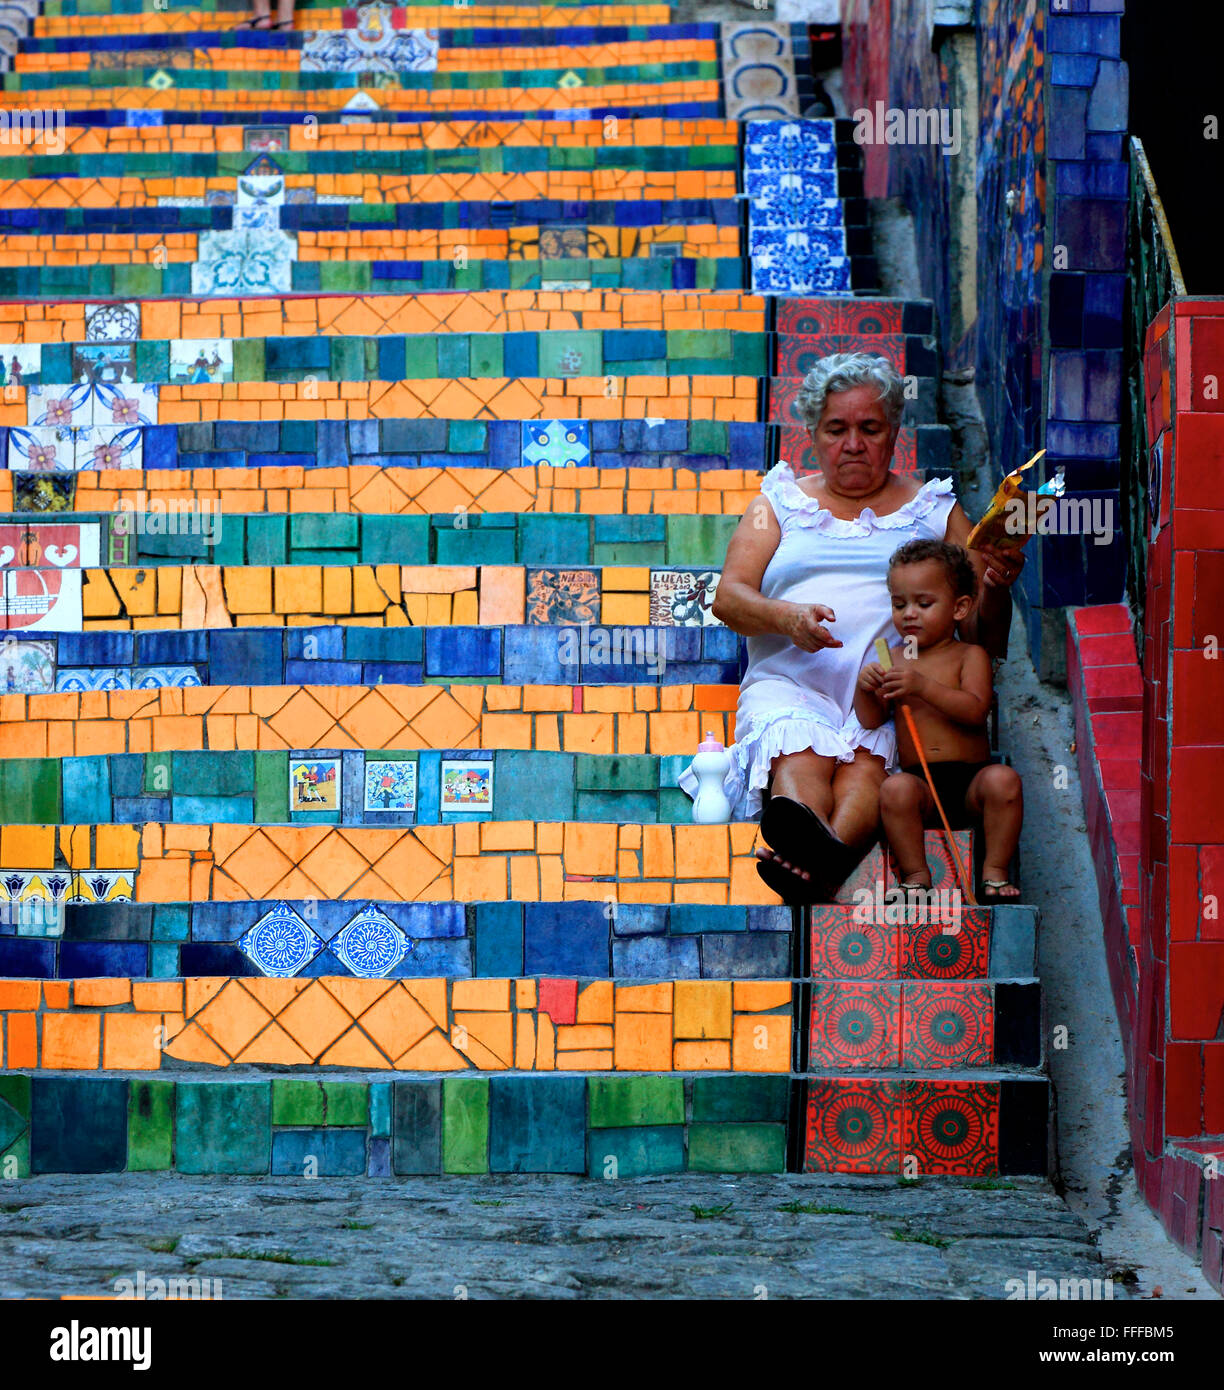 Esaderia do Selaron, tiles stairs from Santa Teresa to district of Lapa by artist Jorge Selaron, Rio de Janeiro, Brazil Stock Photo